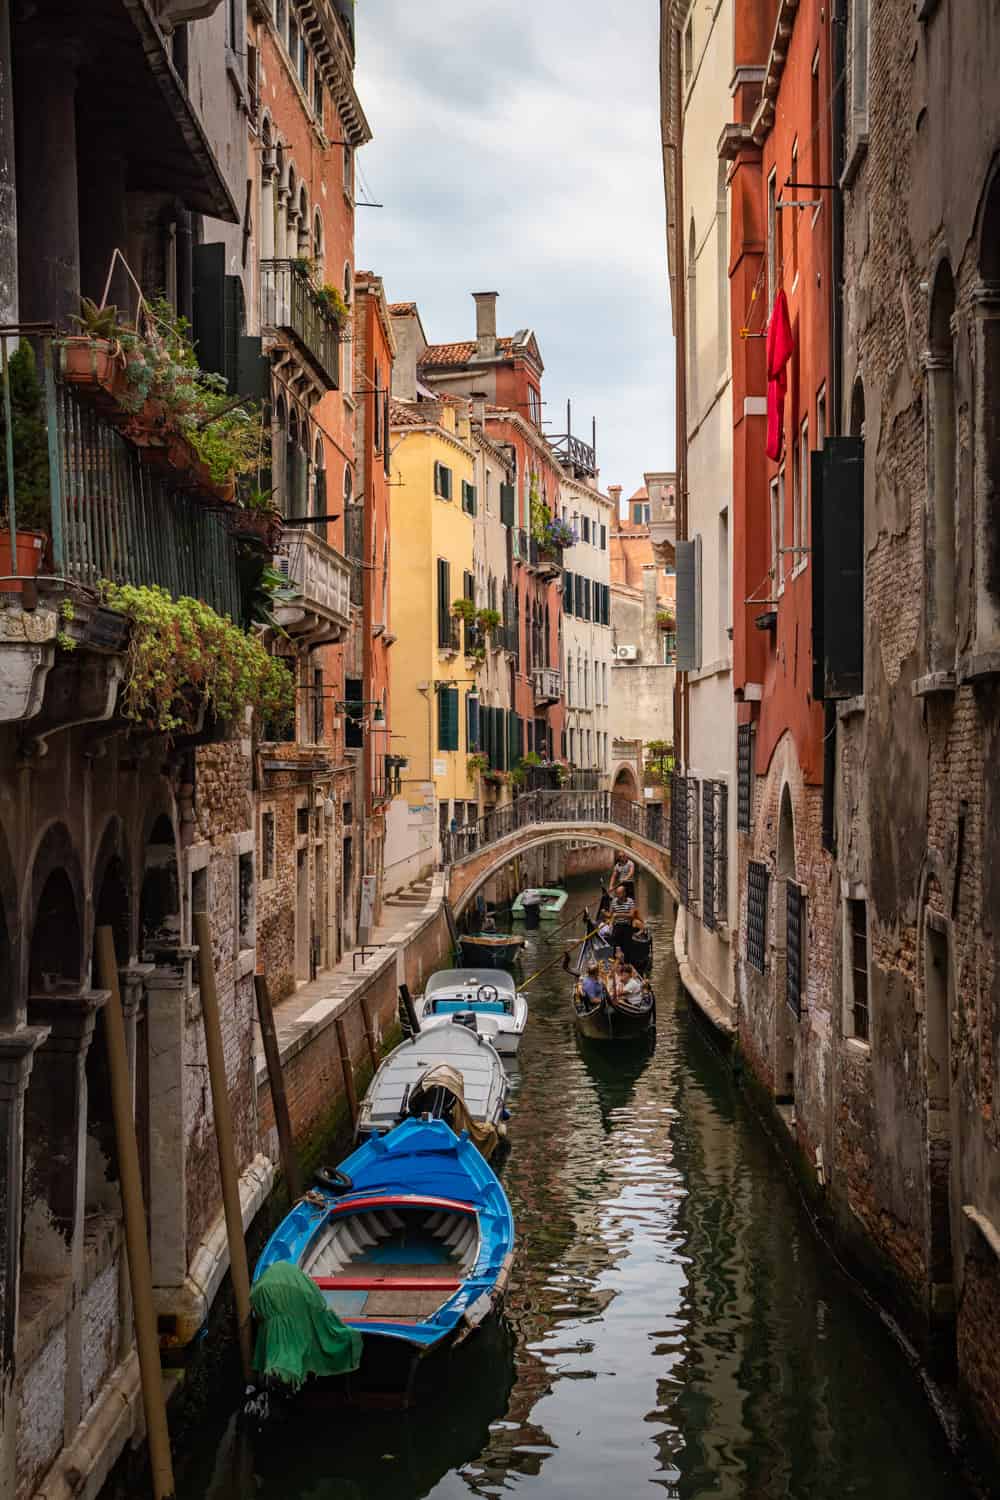 Smal steegje met water en boten langs de linkerkant met gekleurde huizen met planten voor de ramen in Venetië